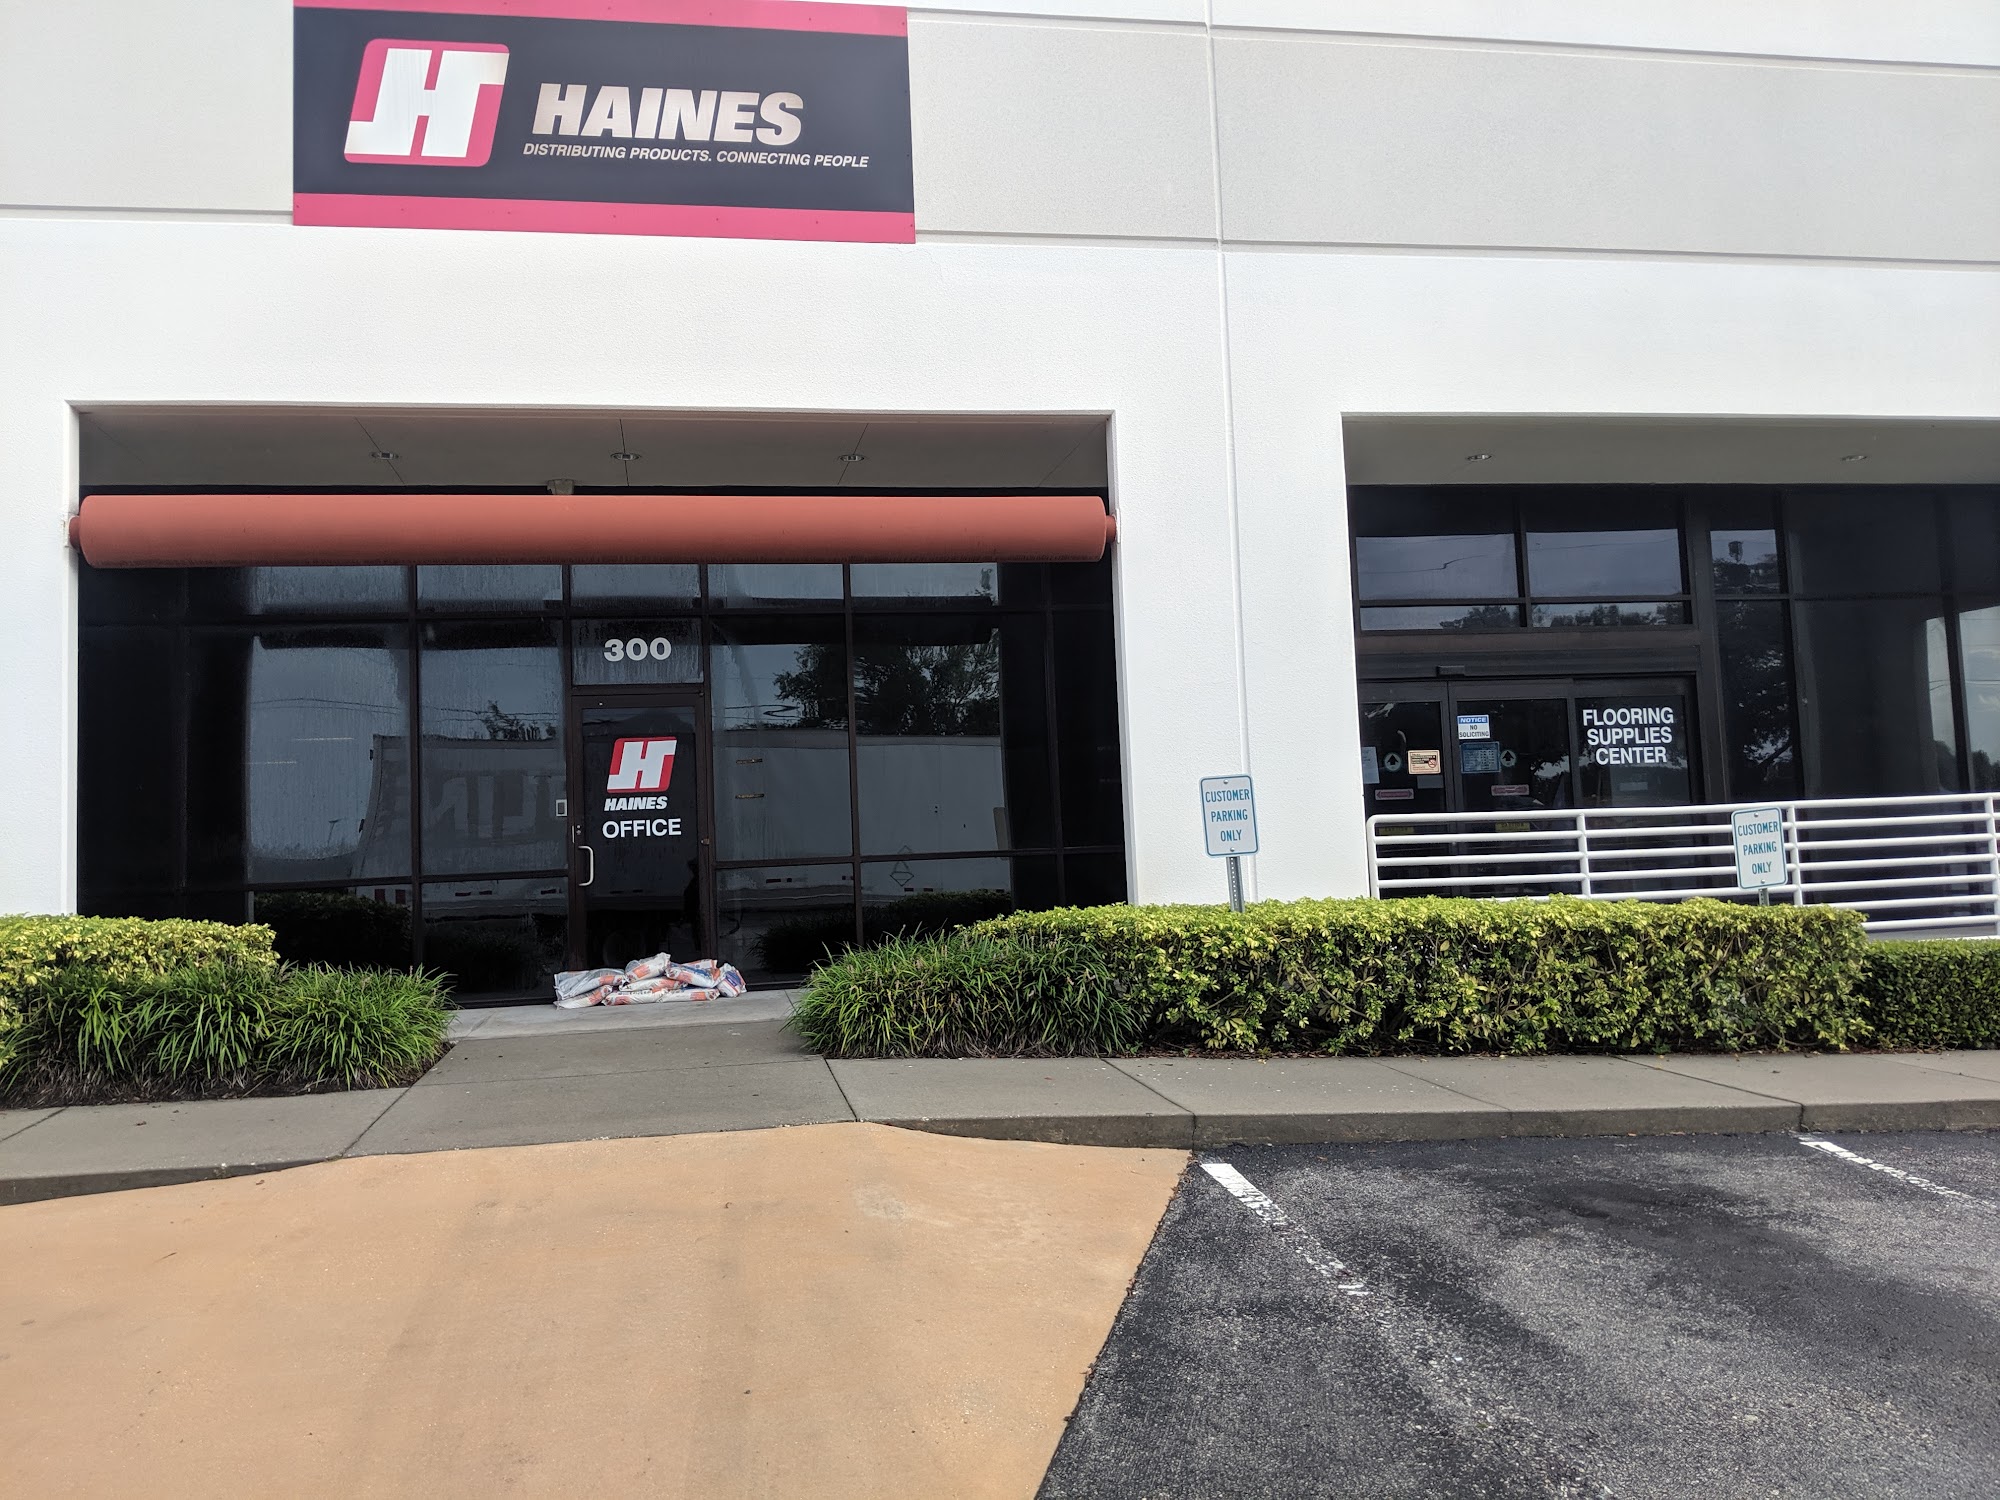 JJ Haines Flooring Supplies Center